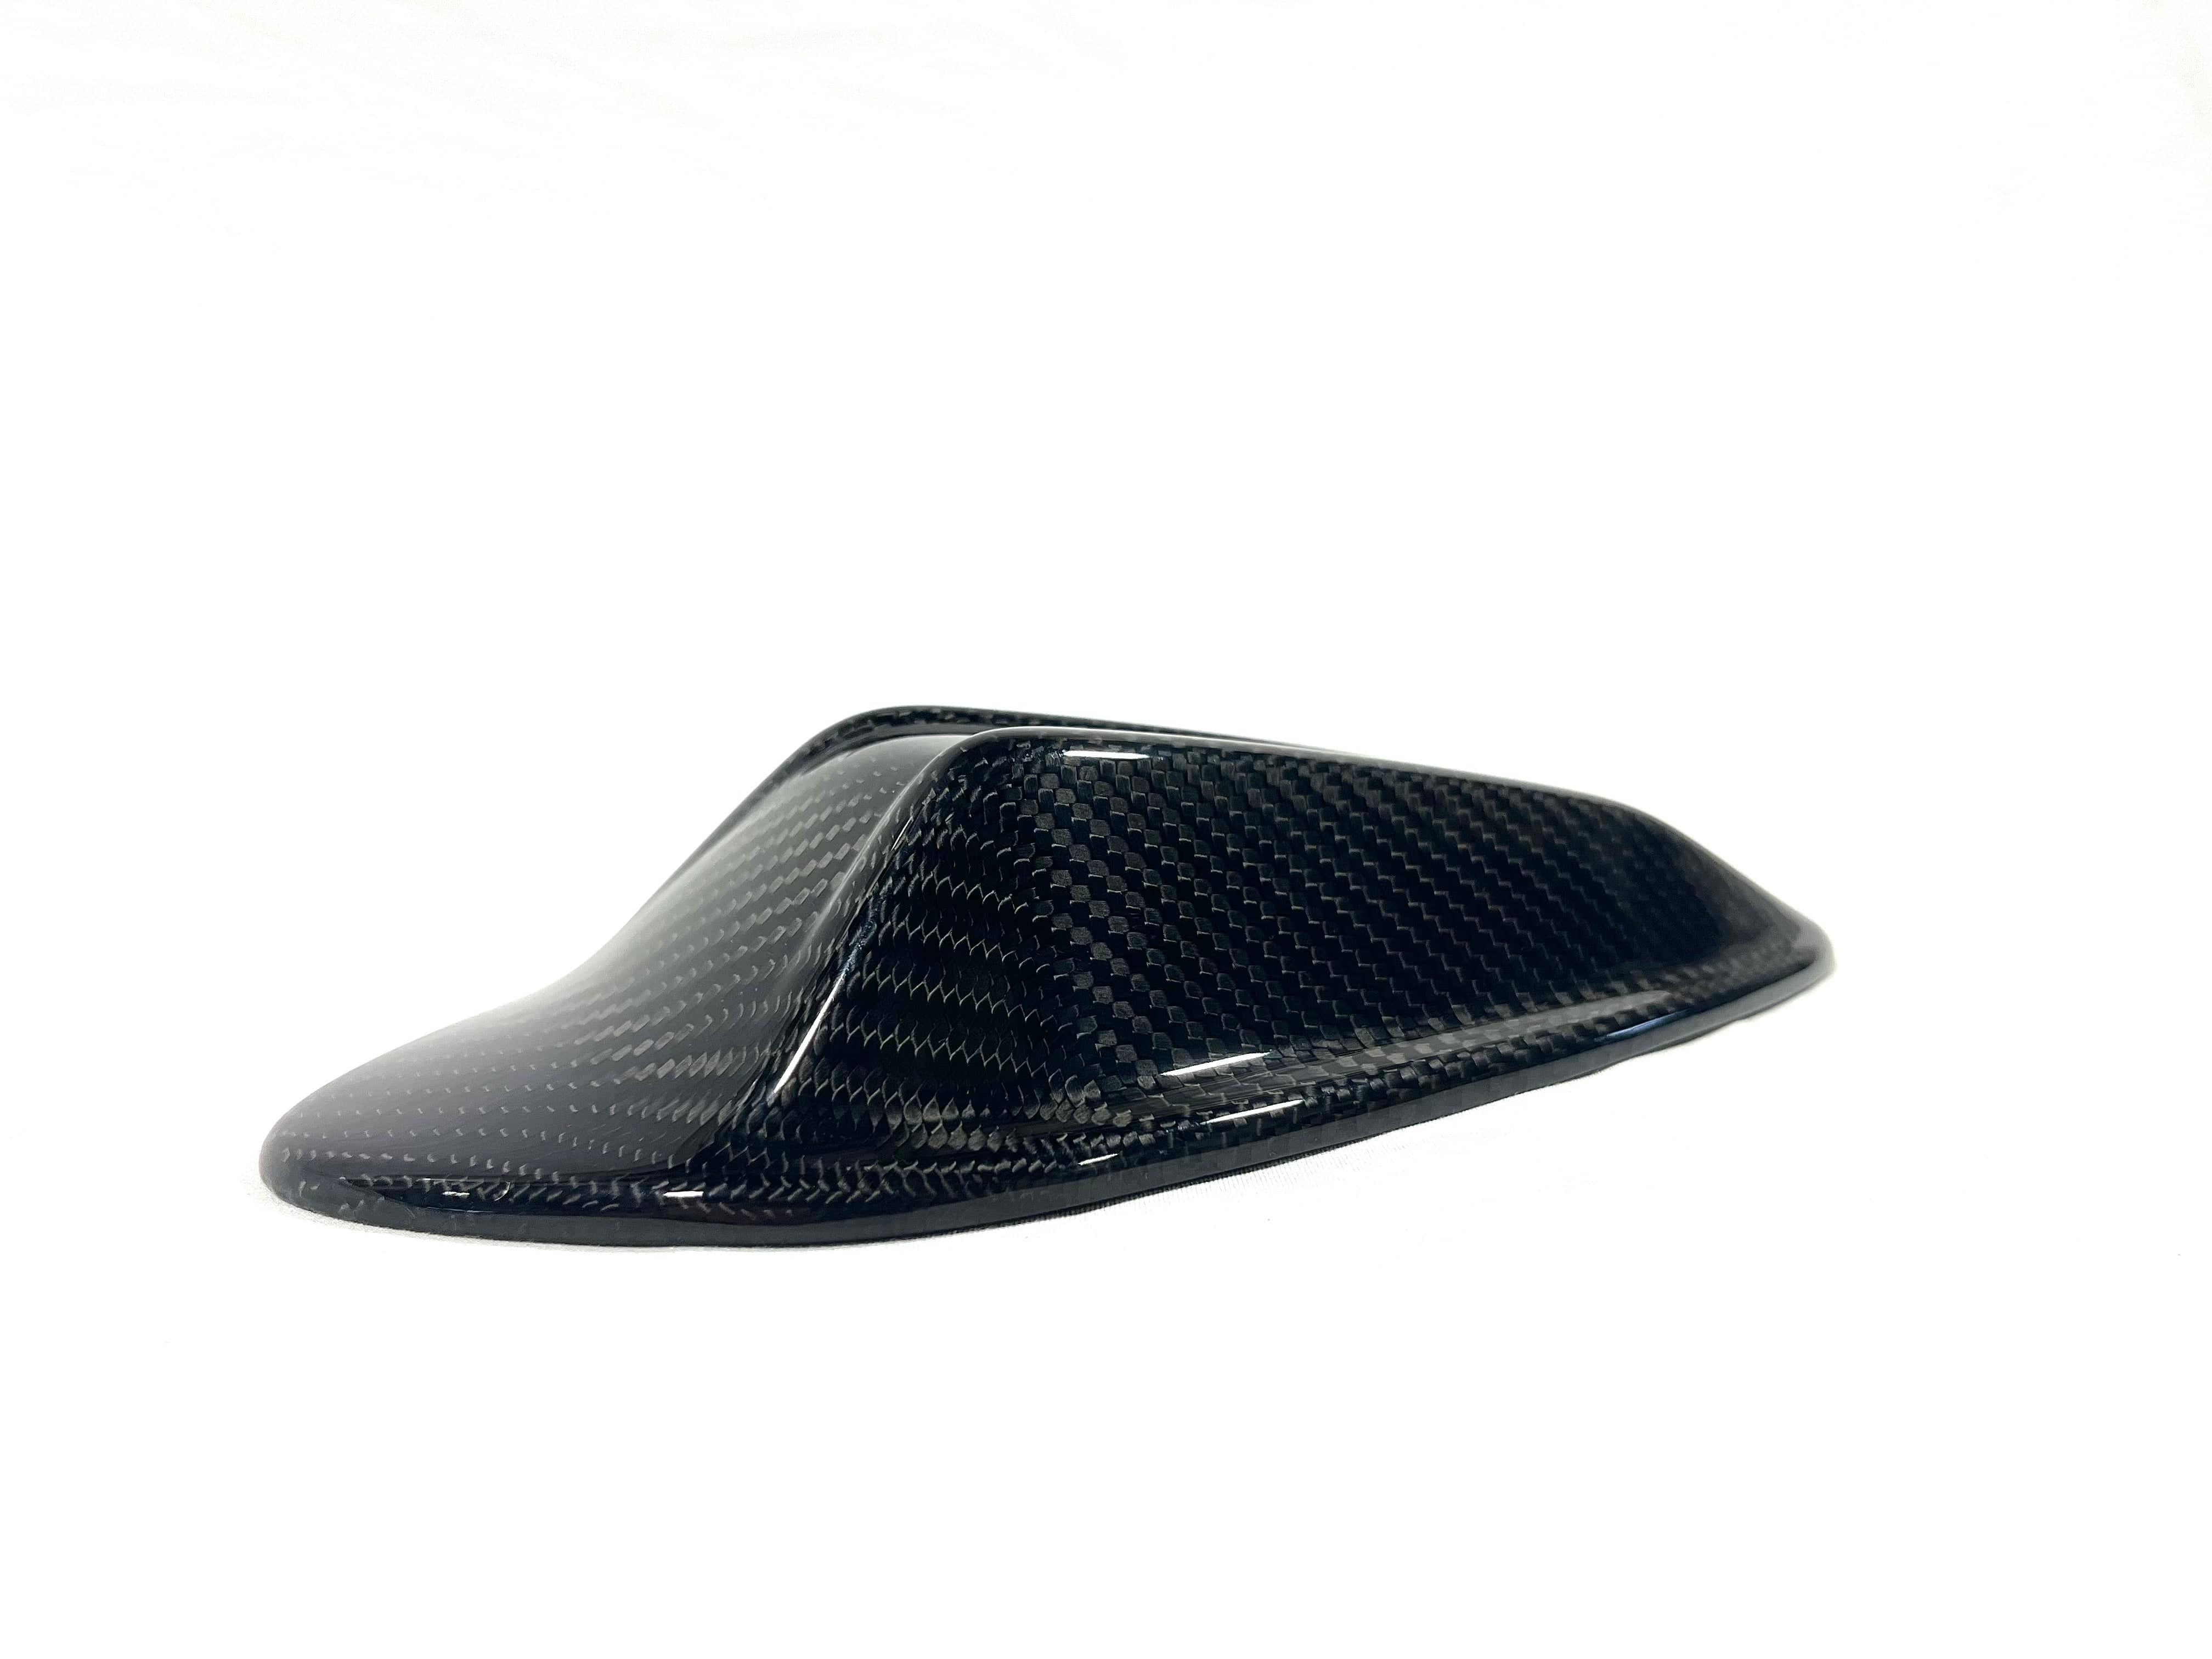 Kies-Motorsports Kies Motorsports Kies Carbon BMW 2x2 Carbon Fiber Shark Fin Antenna Overlay - G Series (LCI)